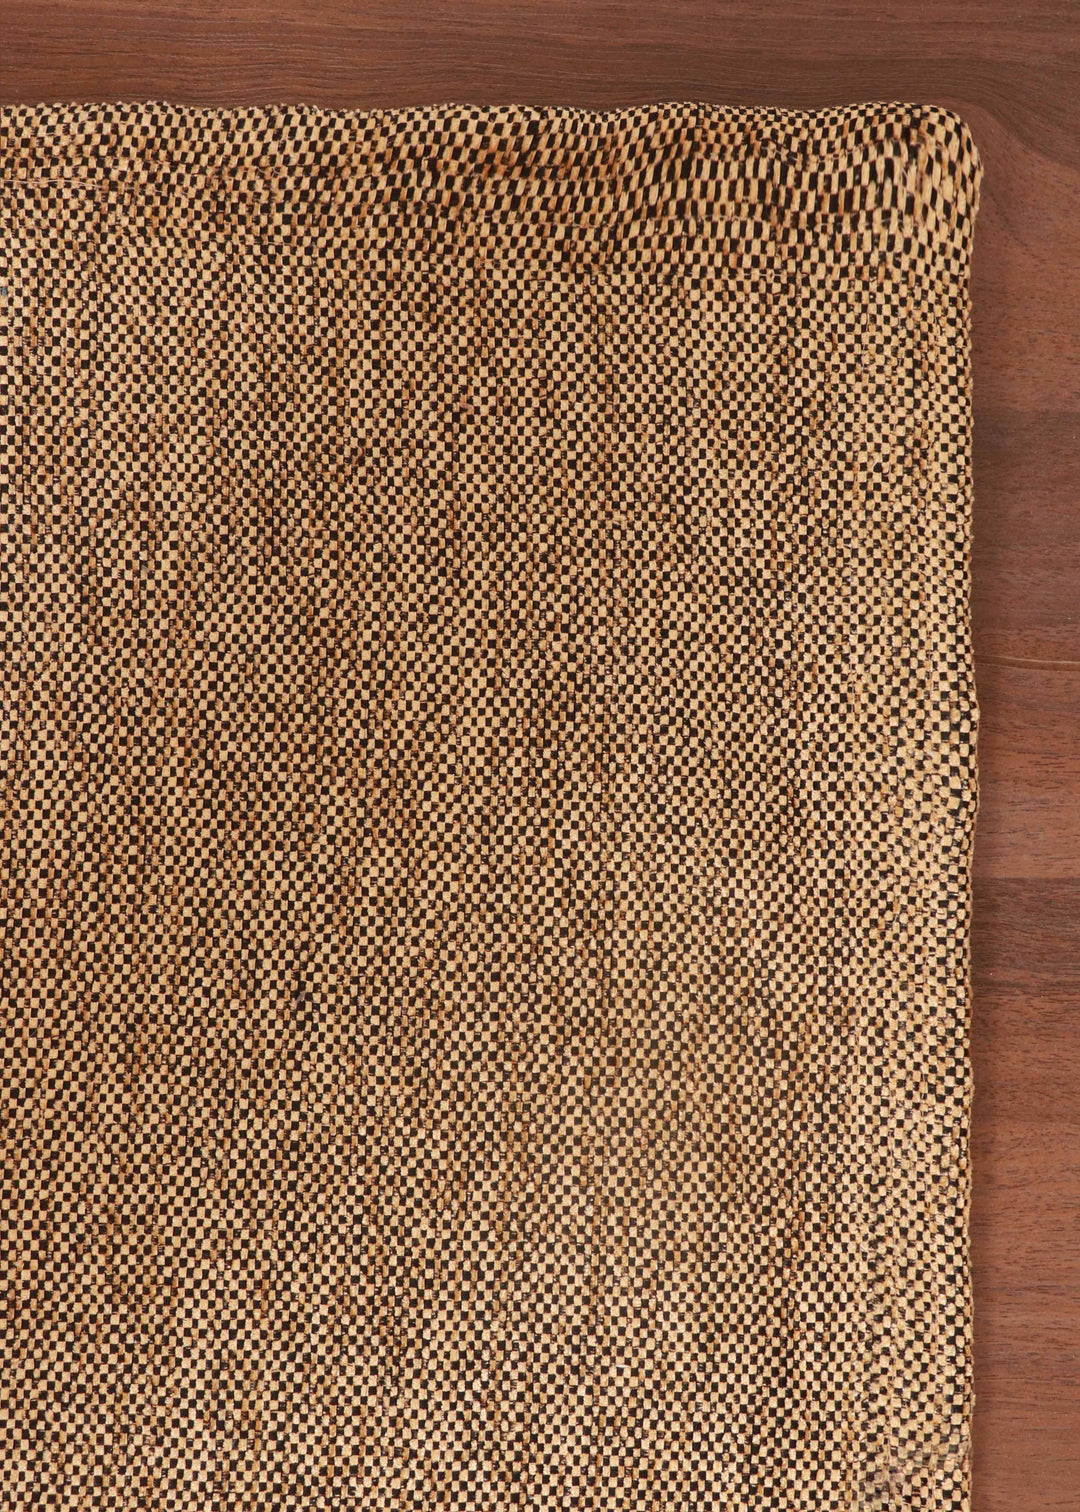 Copper Plain Weave Rug